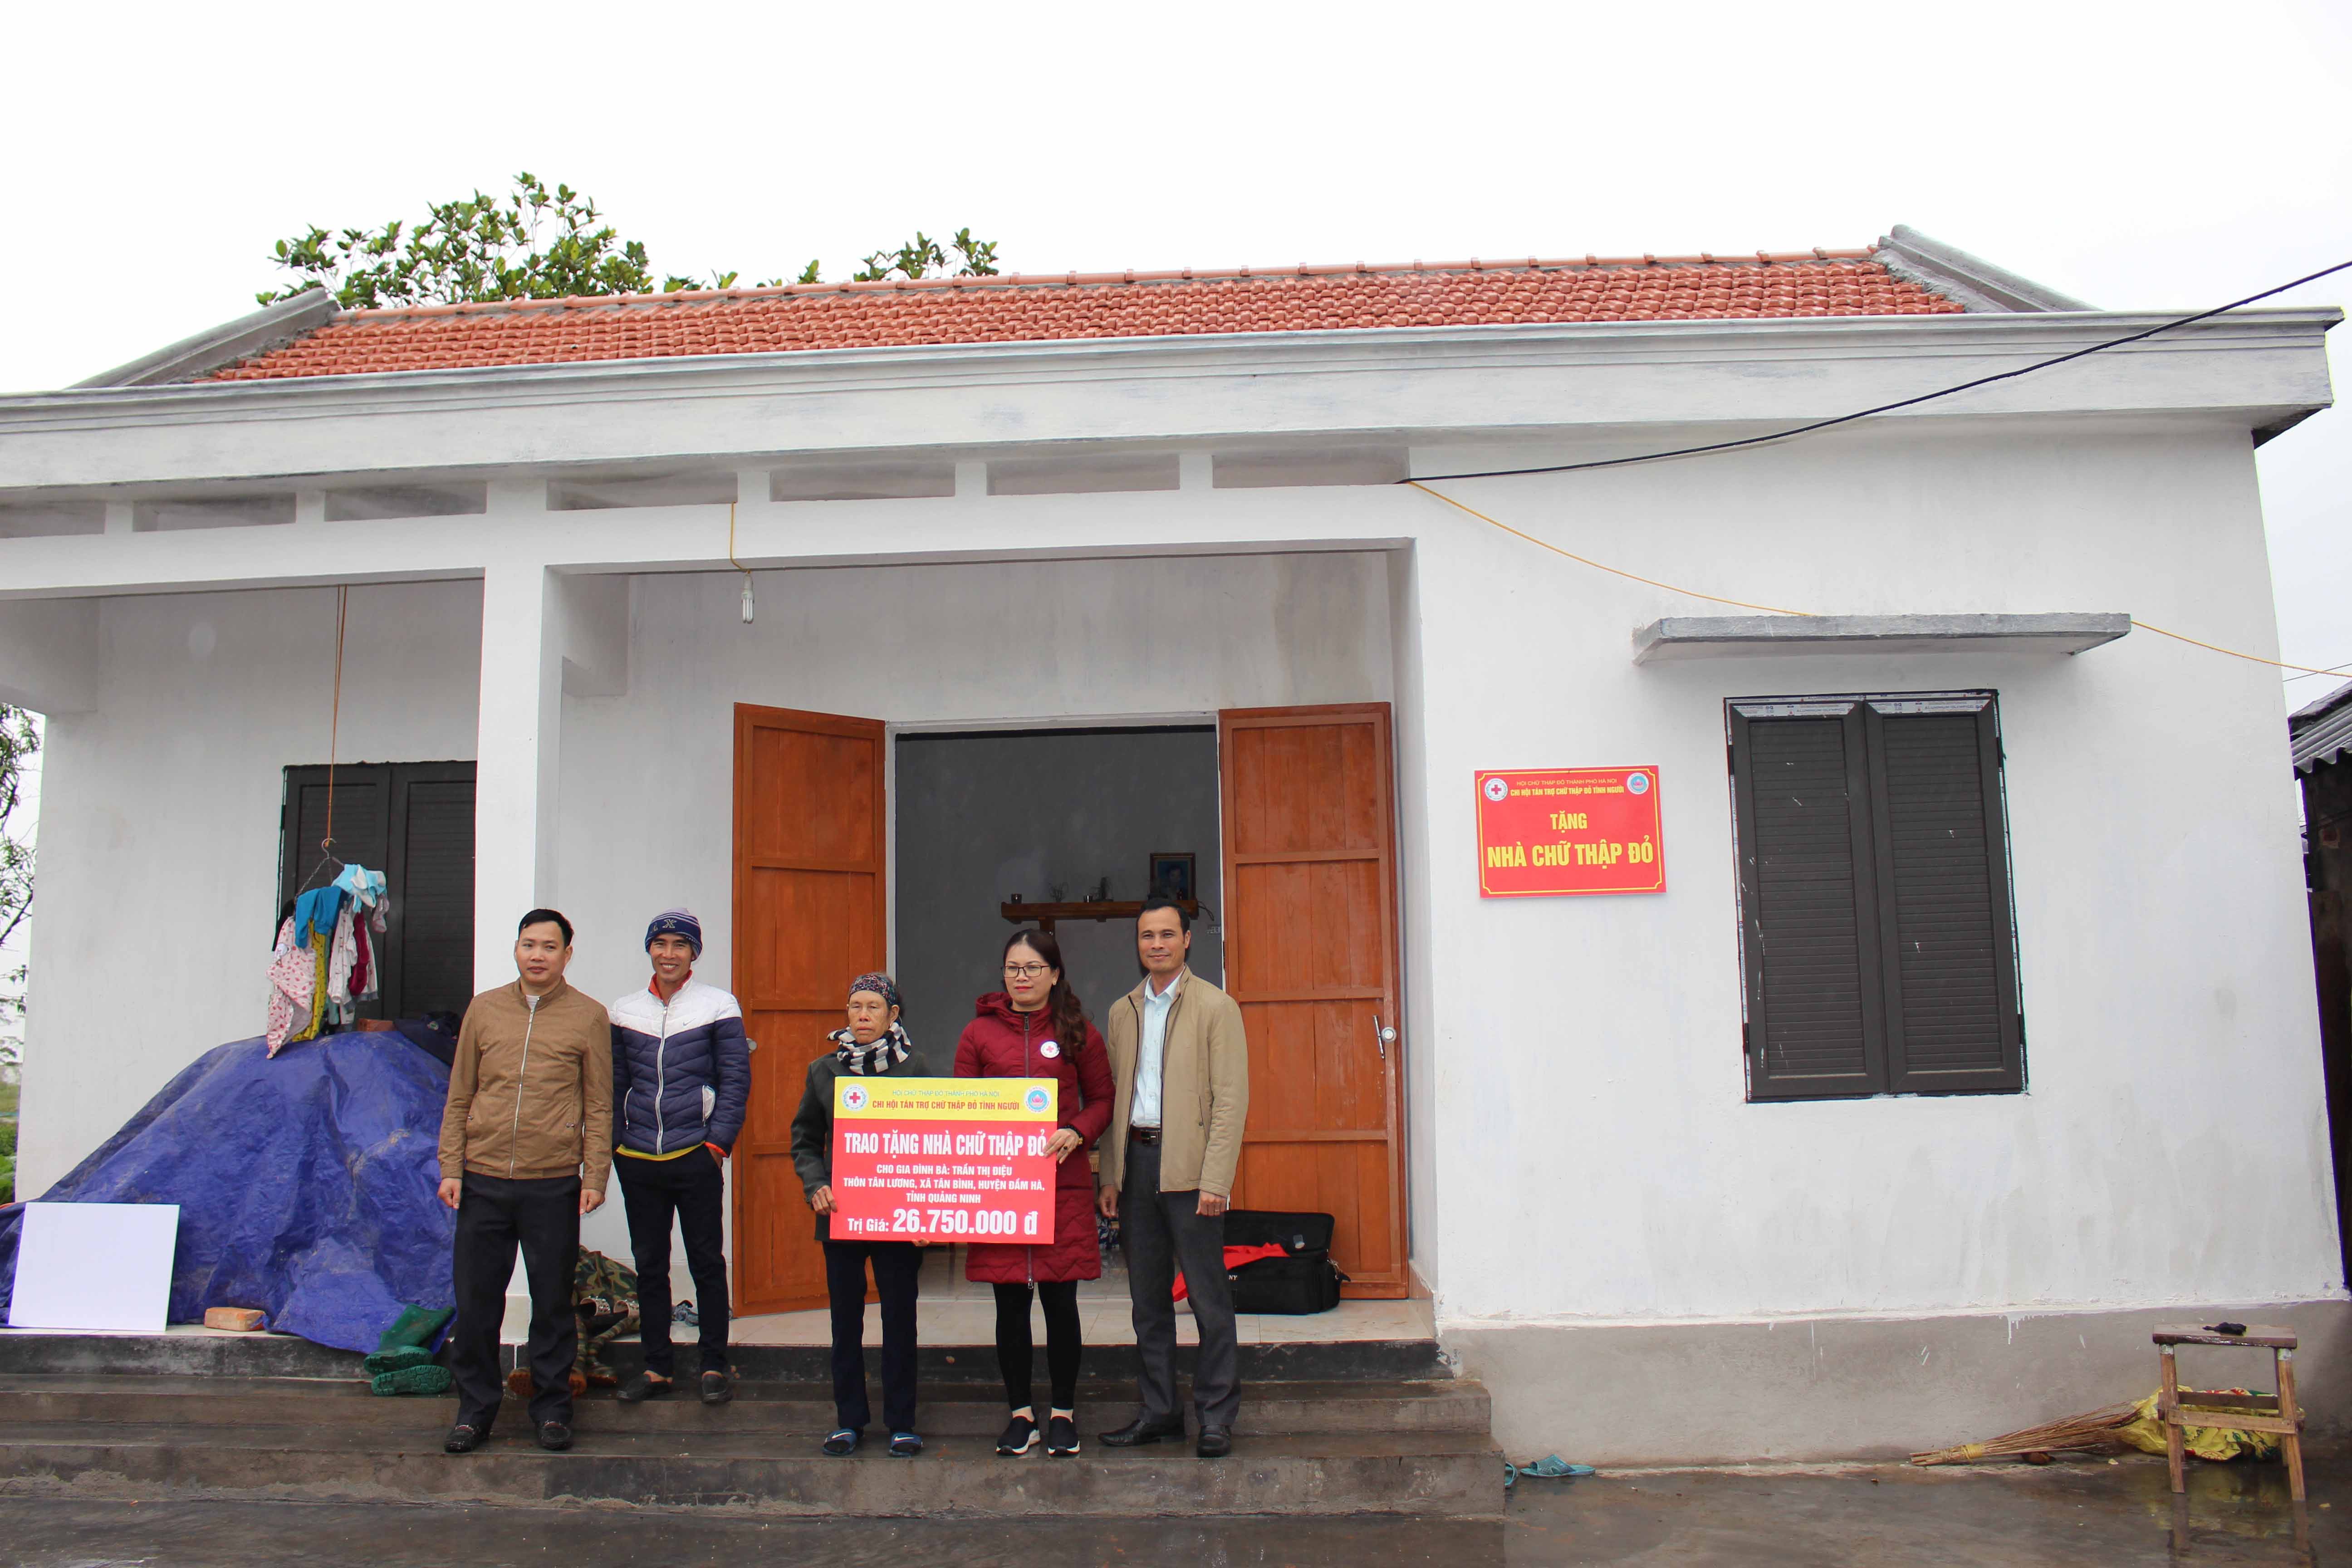 Gia đình bà Trần Thị Điệu, thôn Tân Lương, xã Tân Bình, huyện Đầm Hà vui mừng khi nhận ngôi nhà Chữ thập đỏ